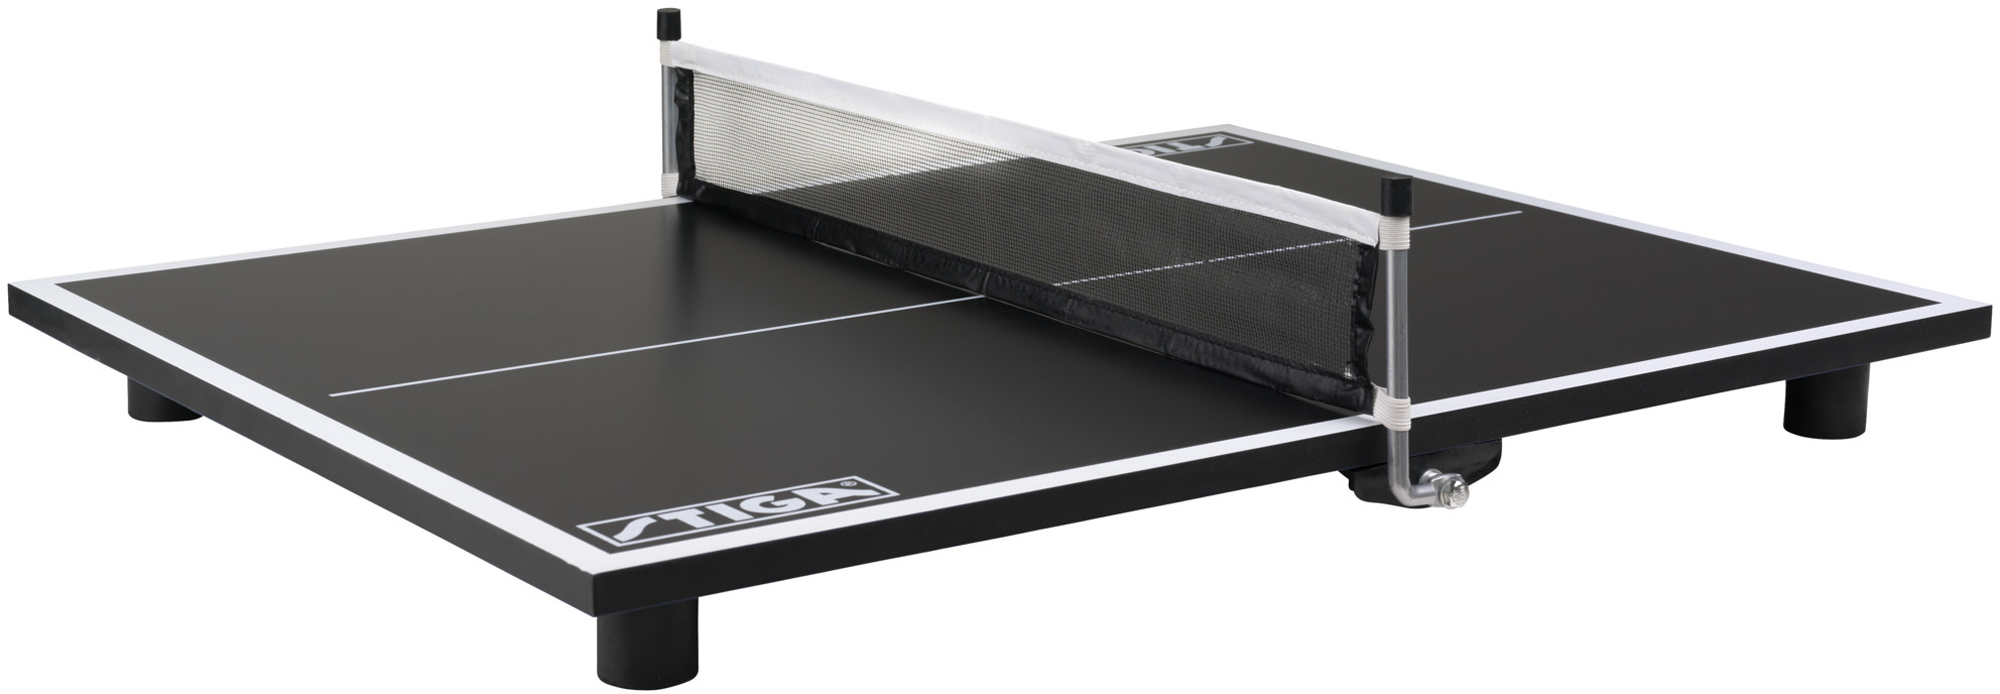 Super Mini Table Tennis Table